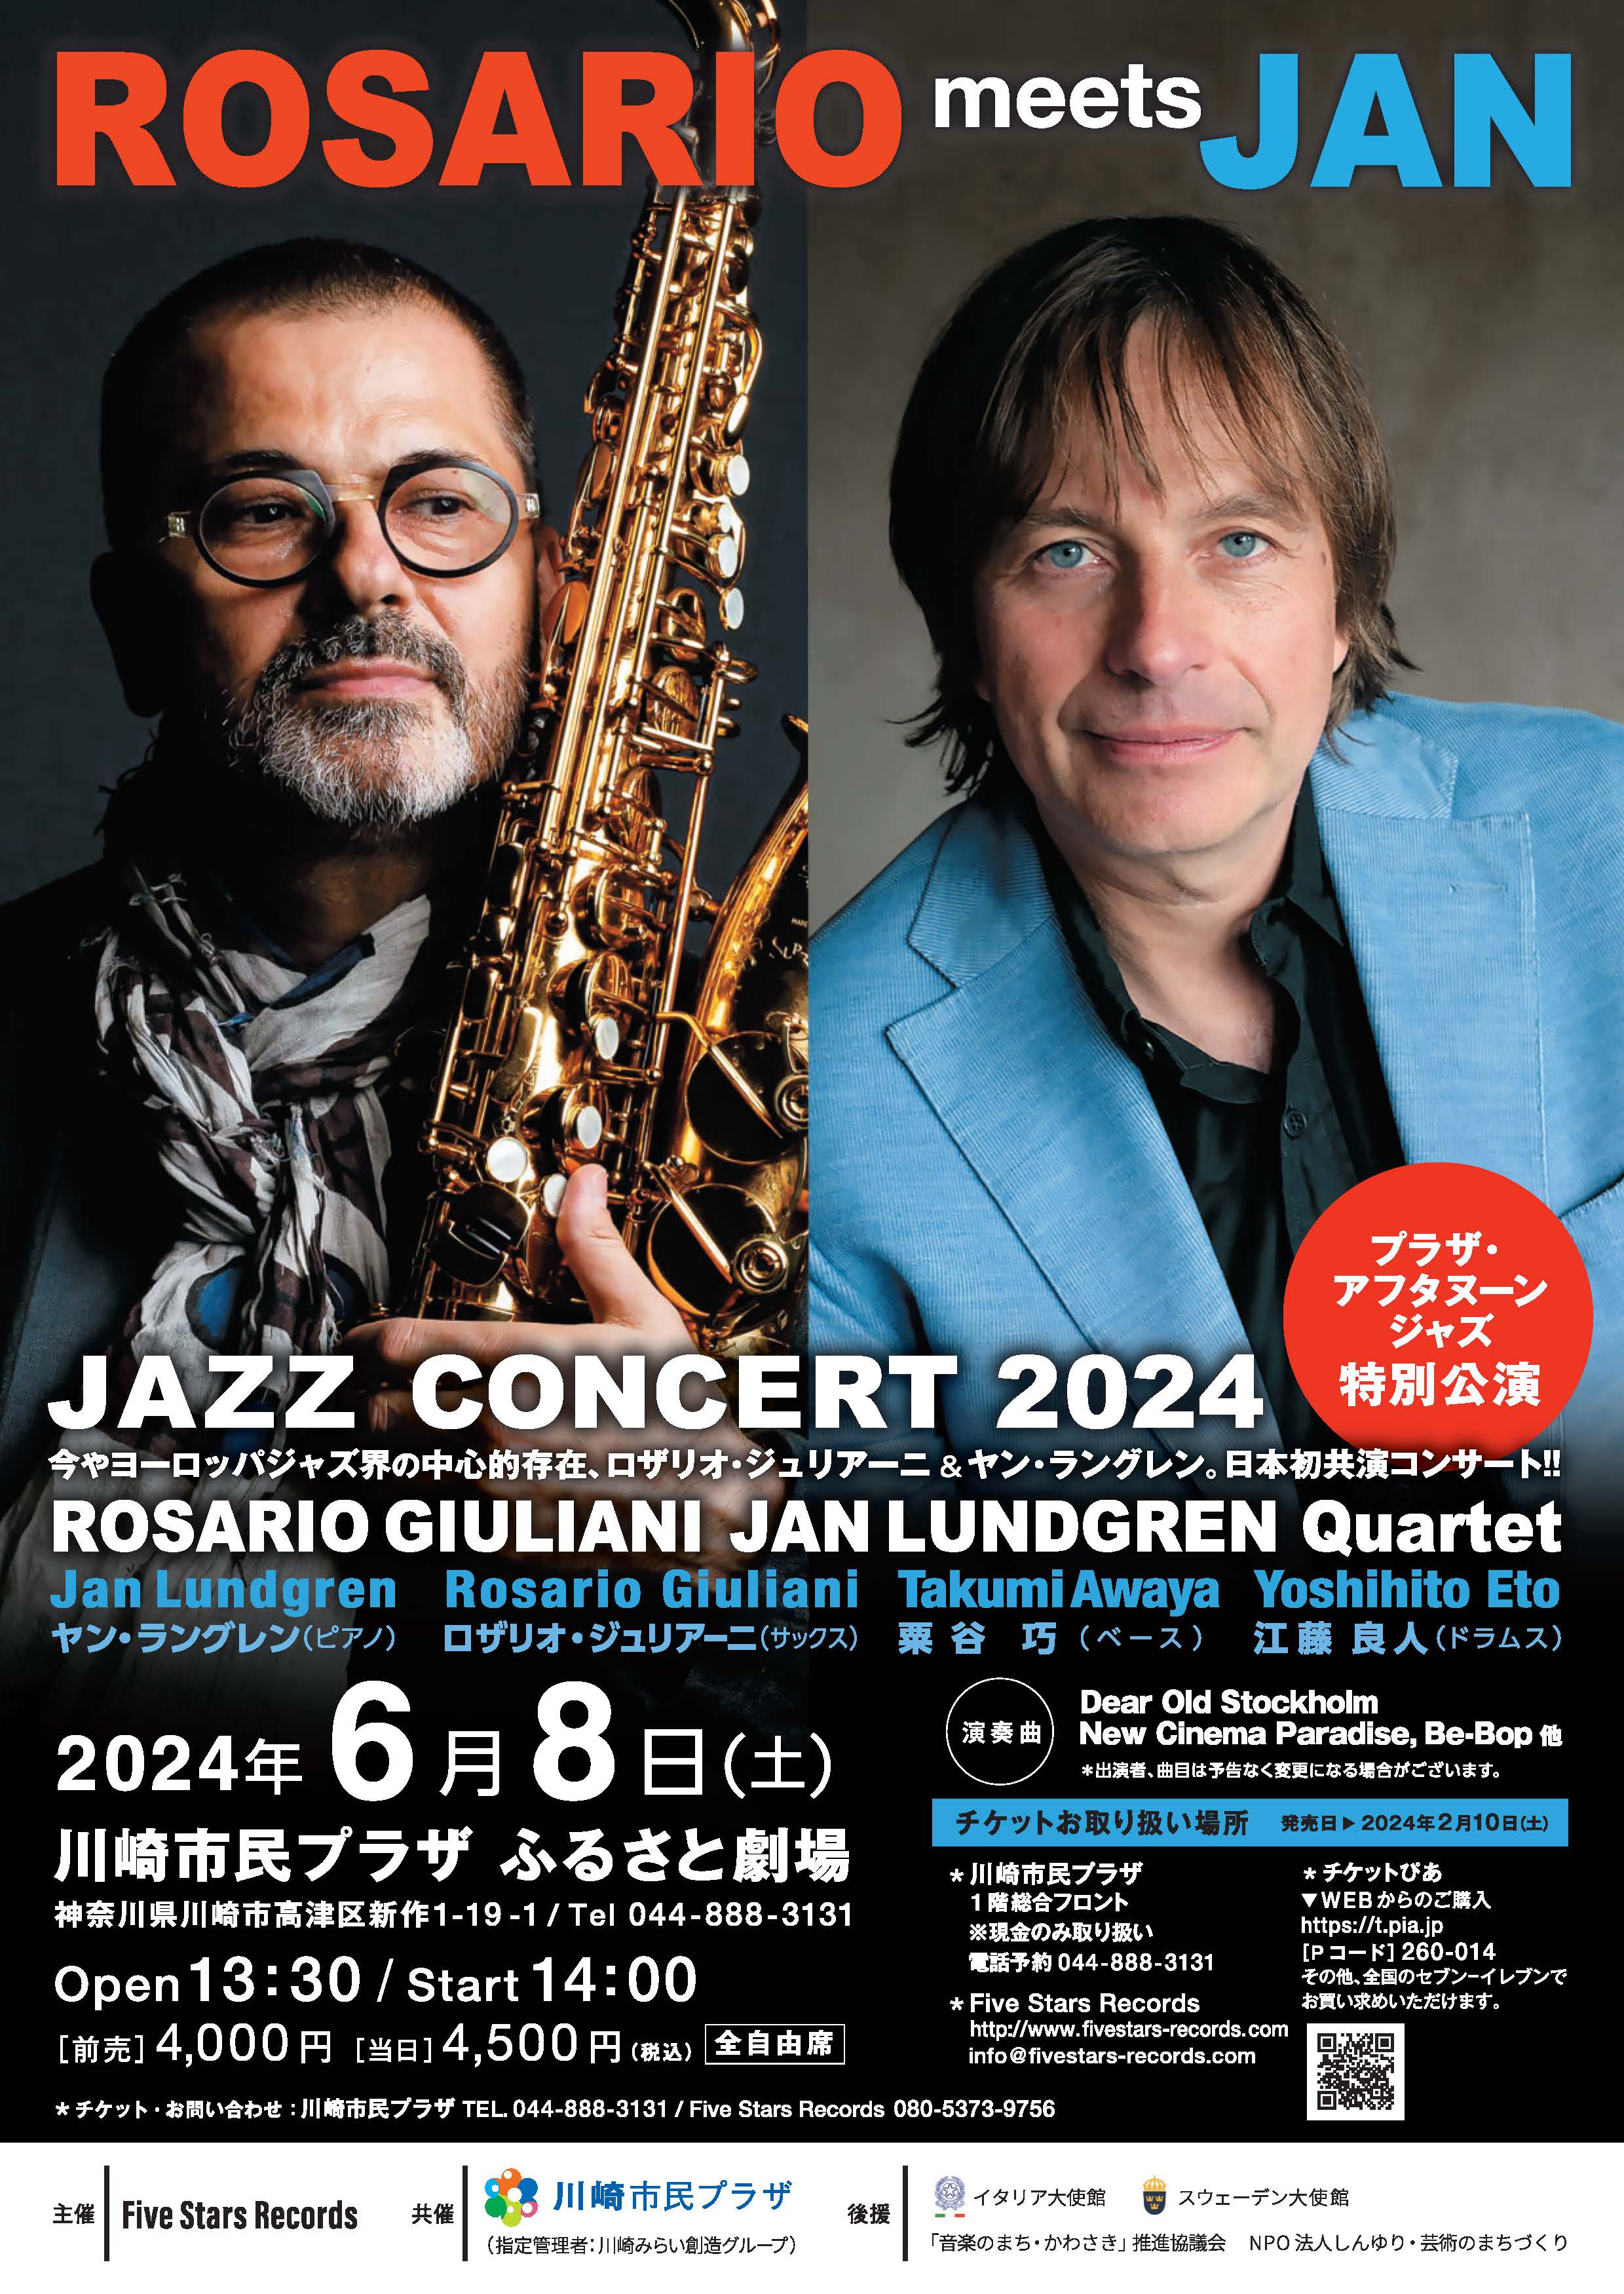 【2024年6月8日】ROSARIO meets JAN JAZZ CONCERT 2024 （プラザ・アフタヌーンジャズ特別公演）